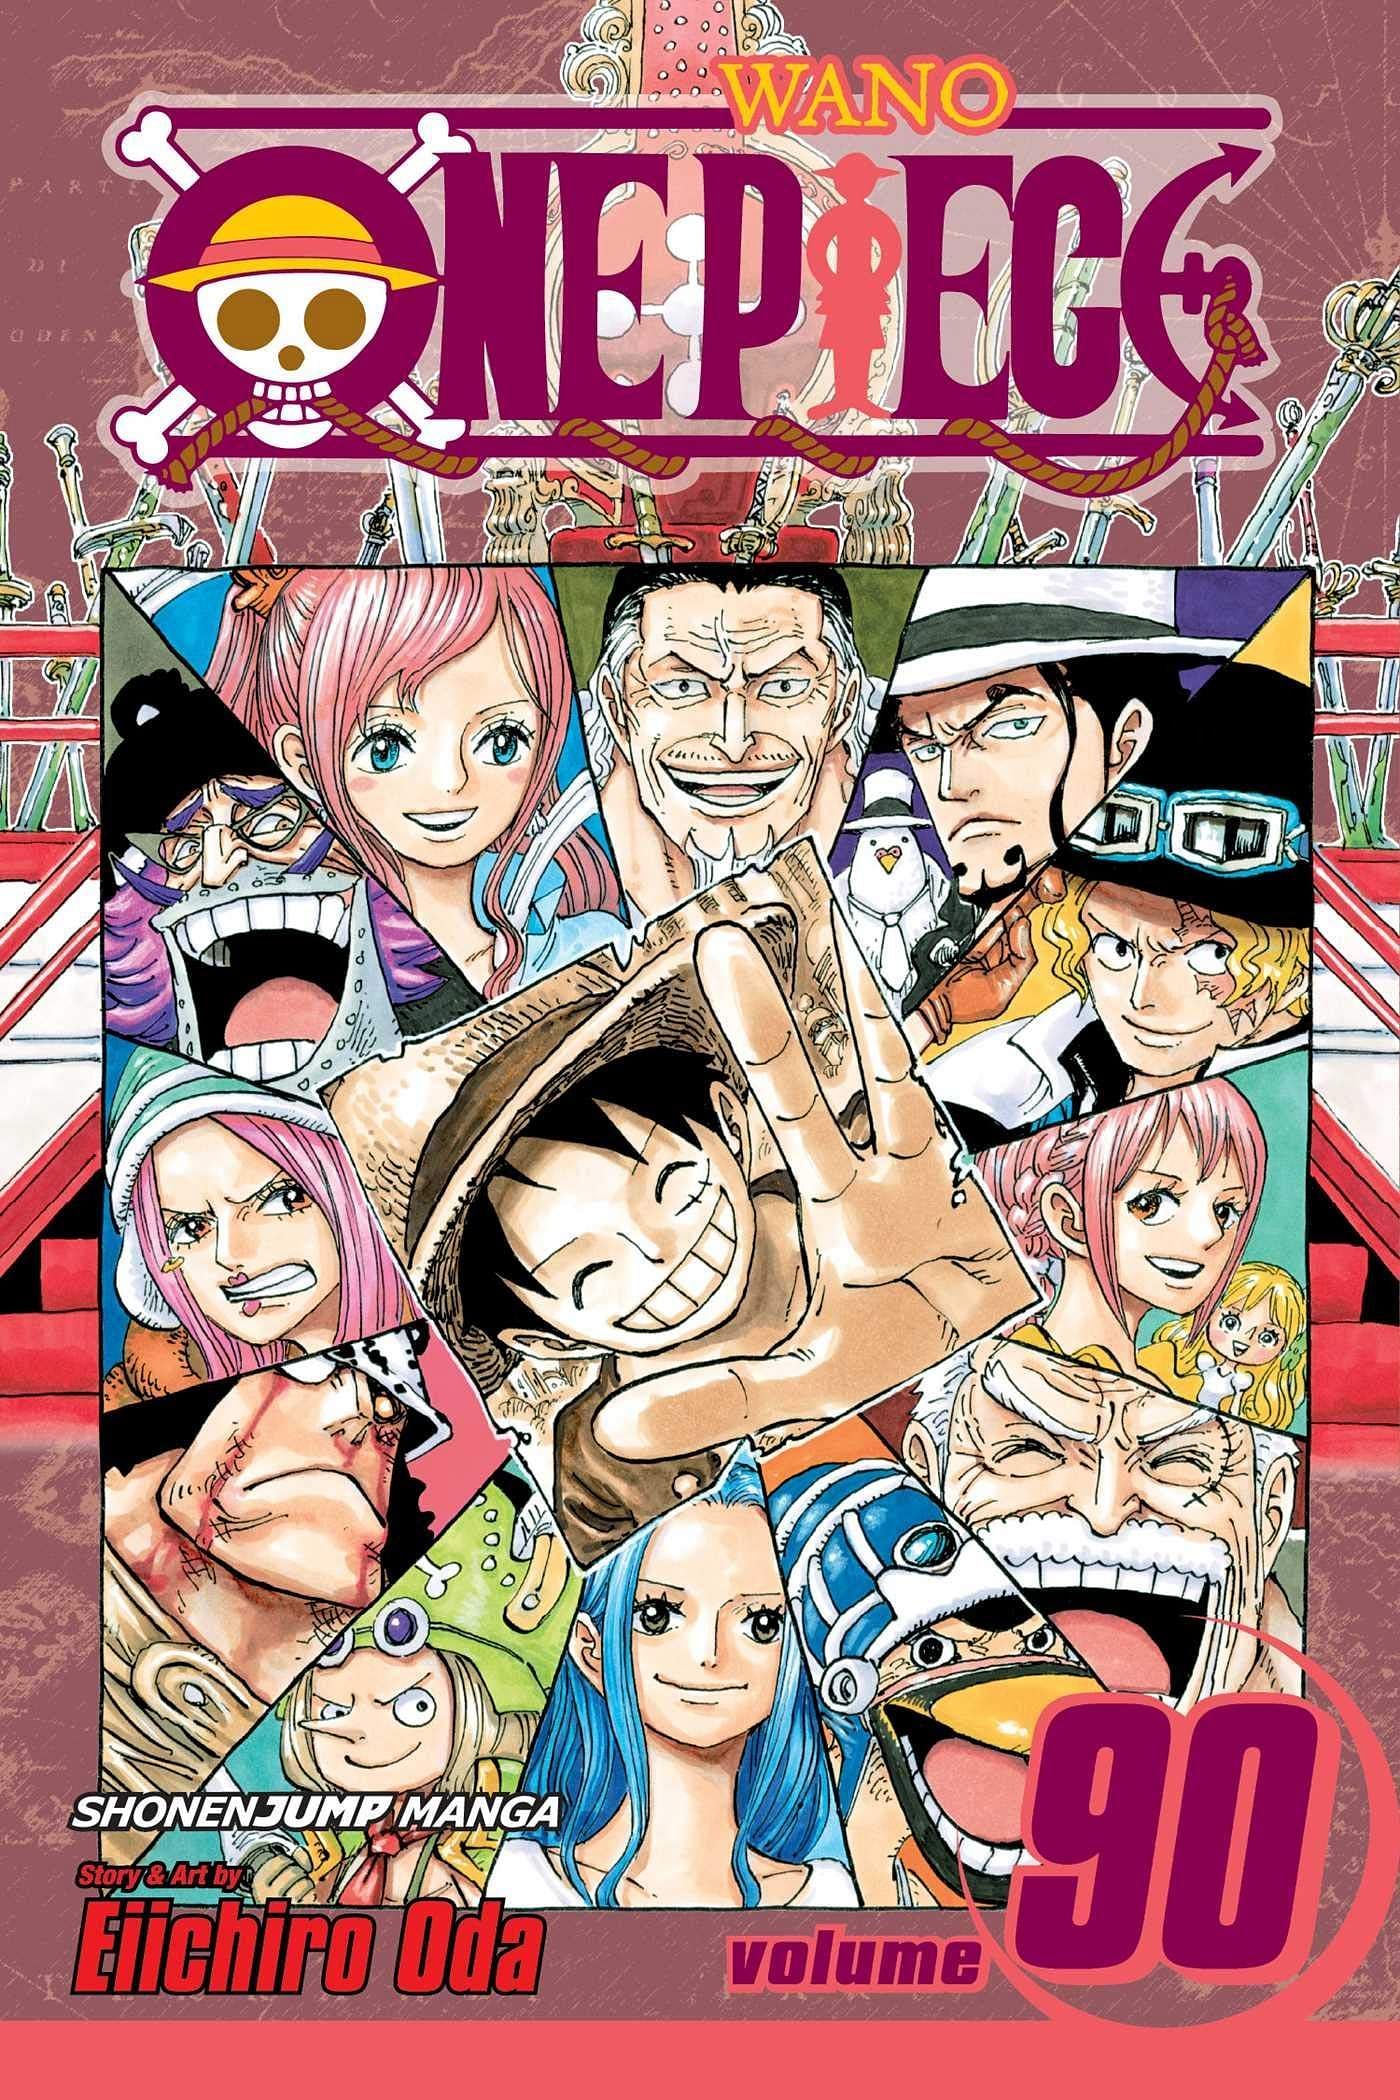 The cover art for One Piece Volume 90 (Image via Shueisha)